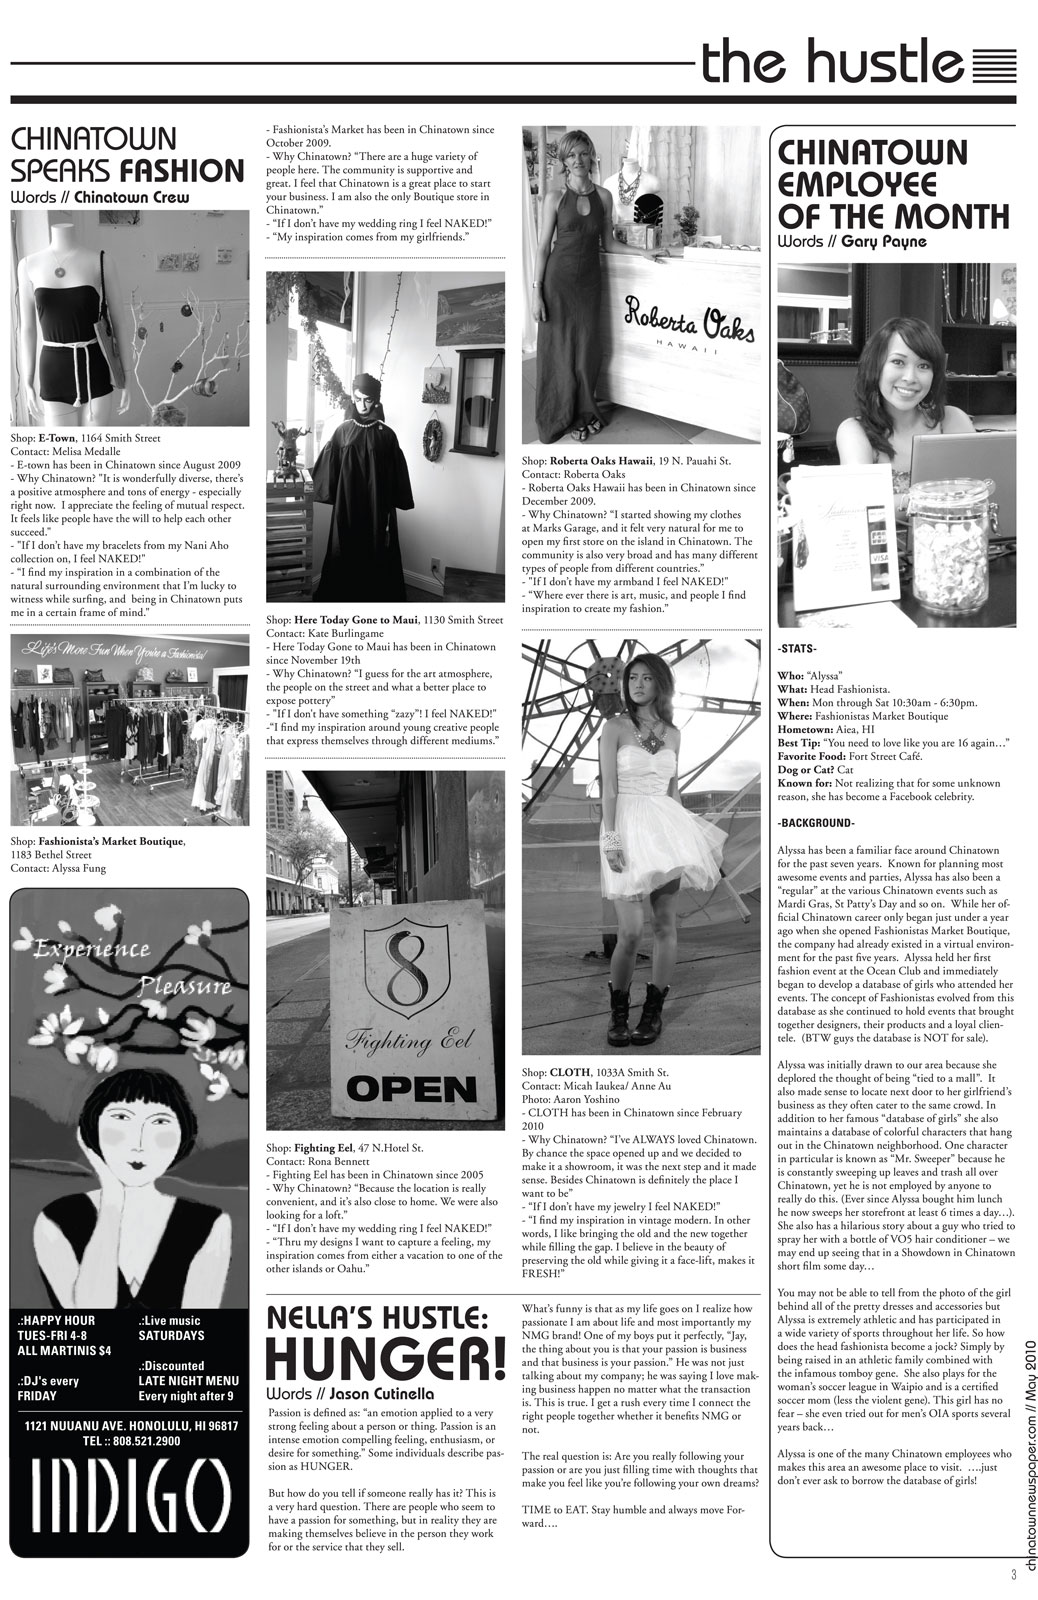 Chinatown Newspaper may 2010 3